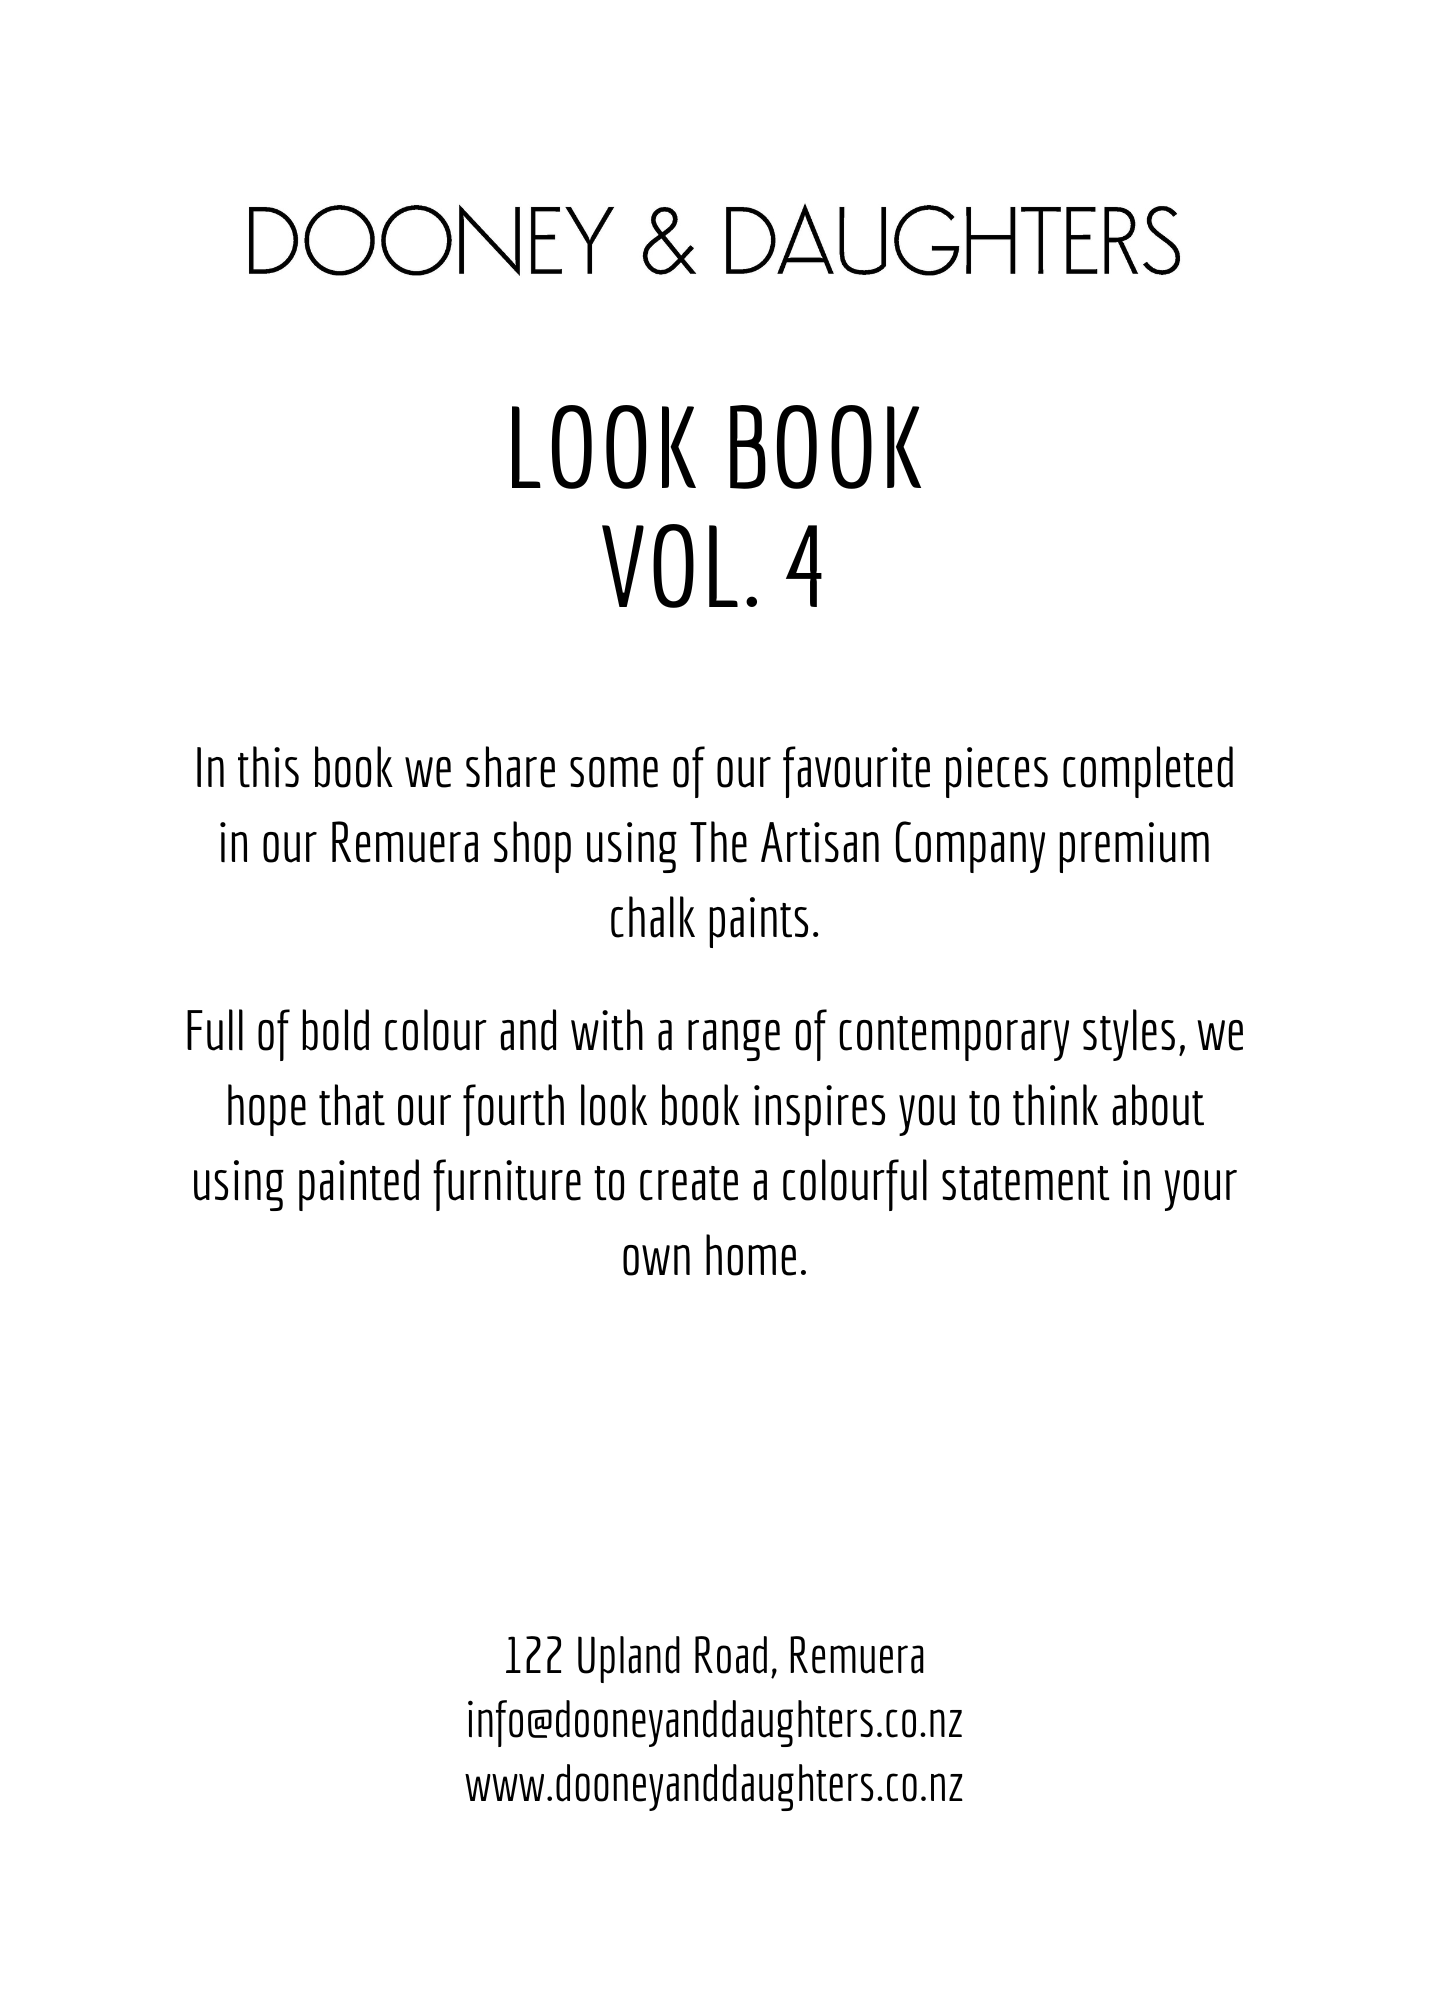 Look Book Vol. 4